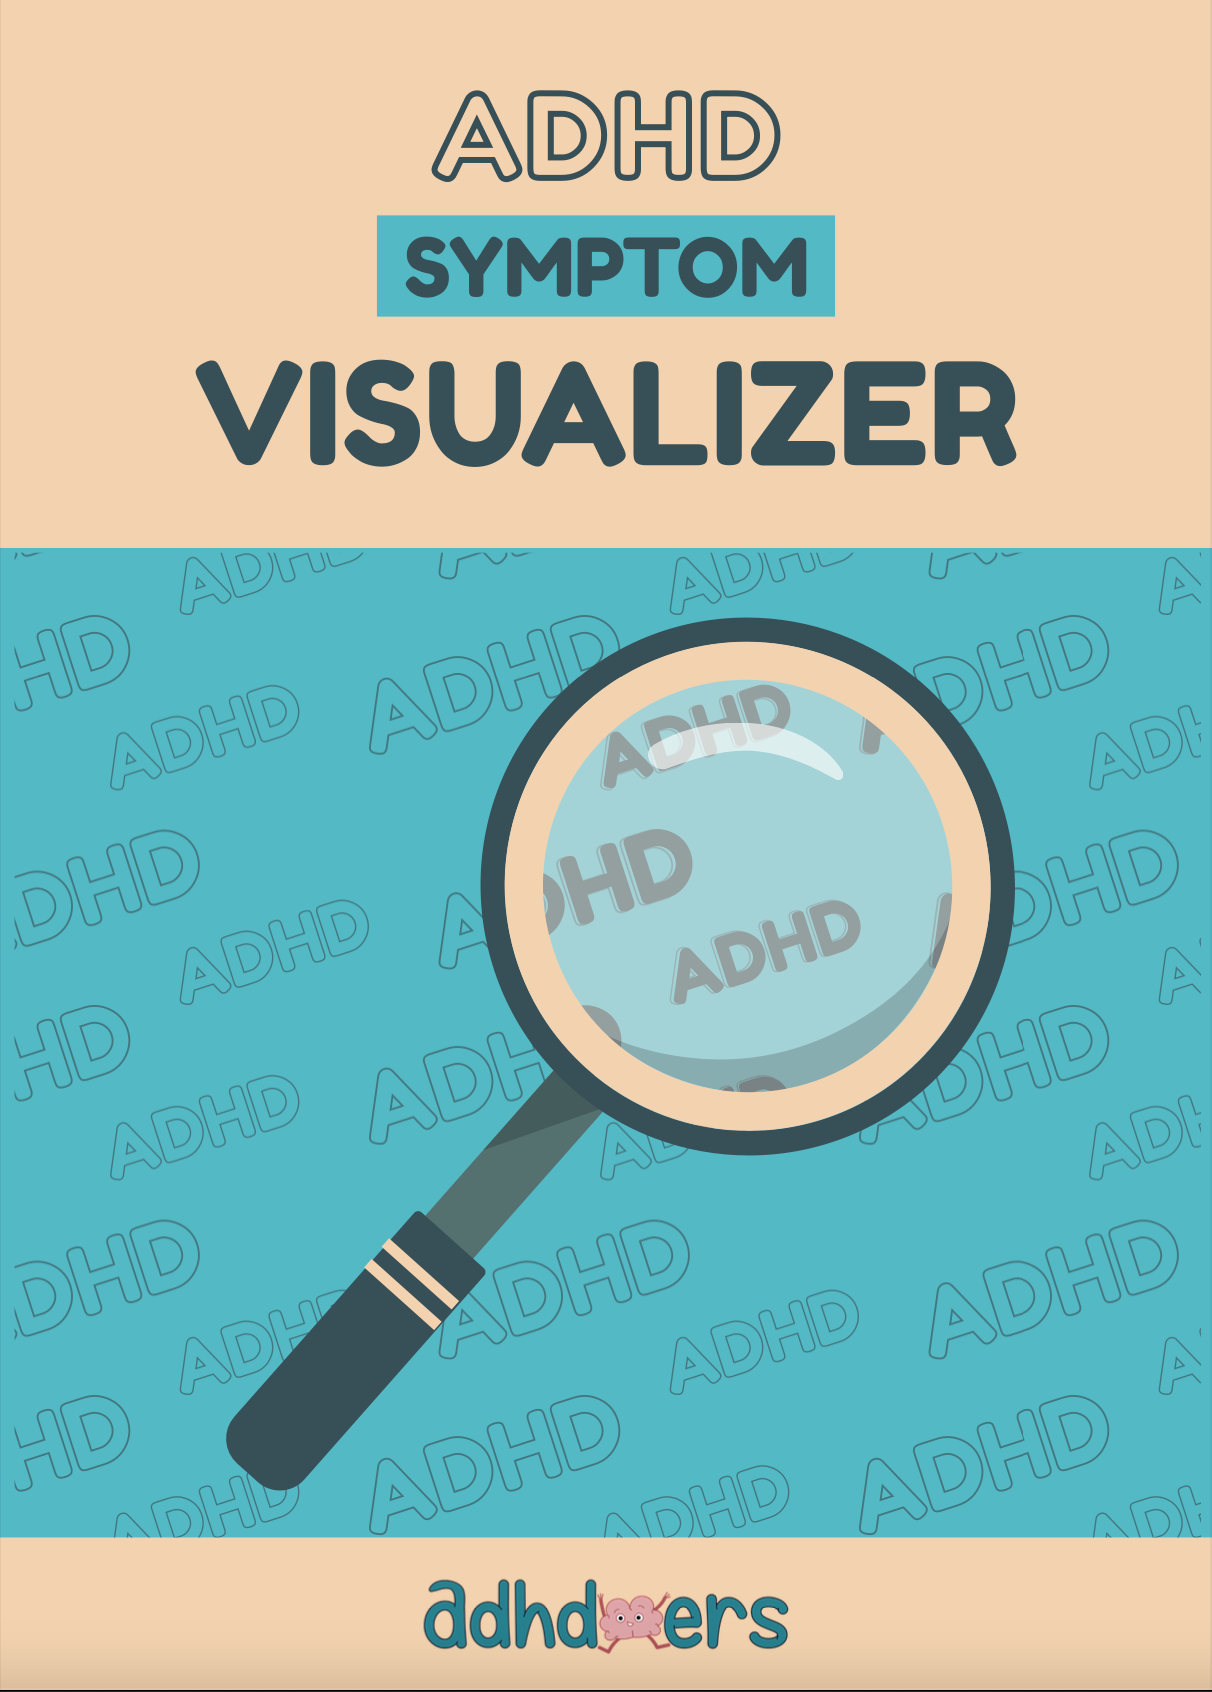 The ADHD Symptom Visualizer